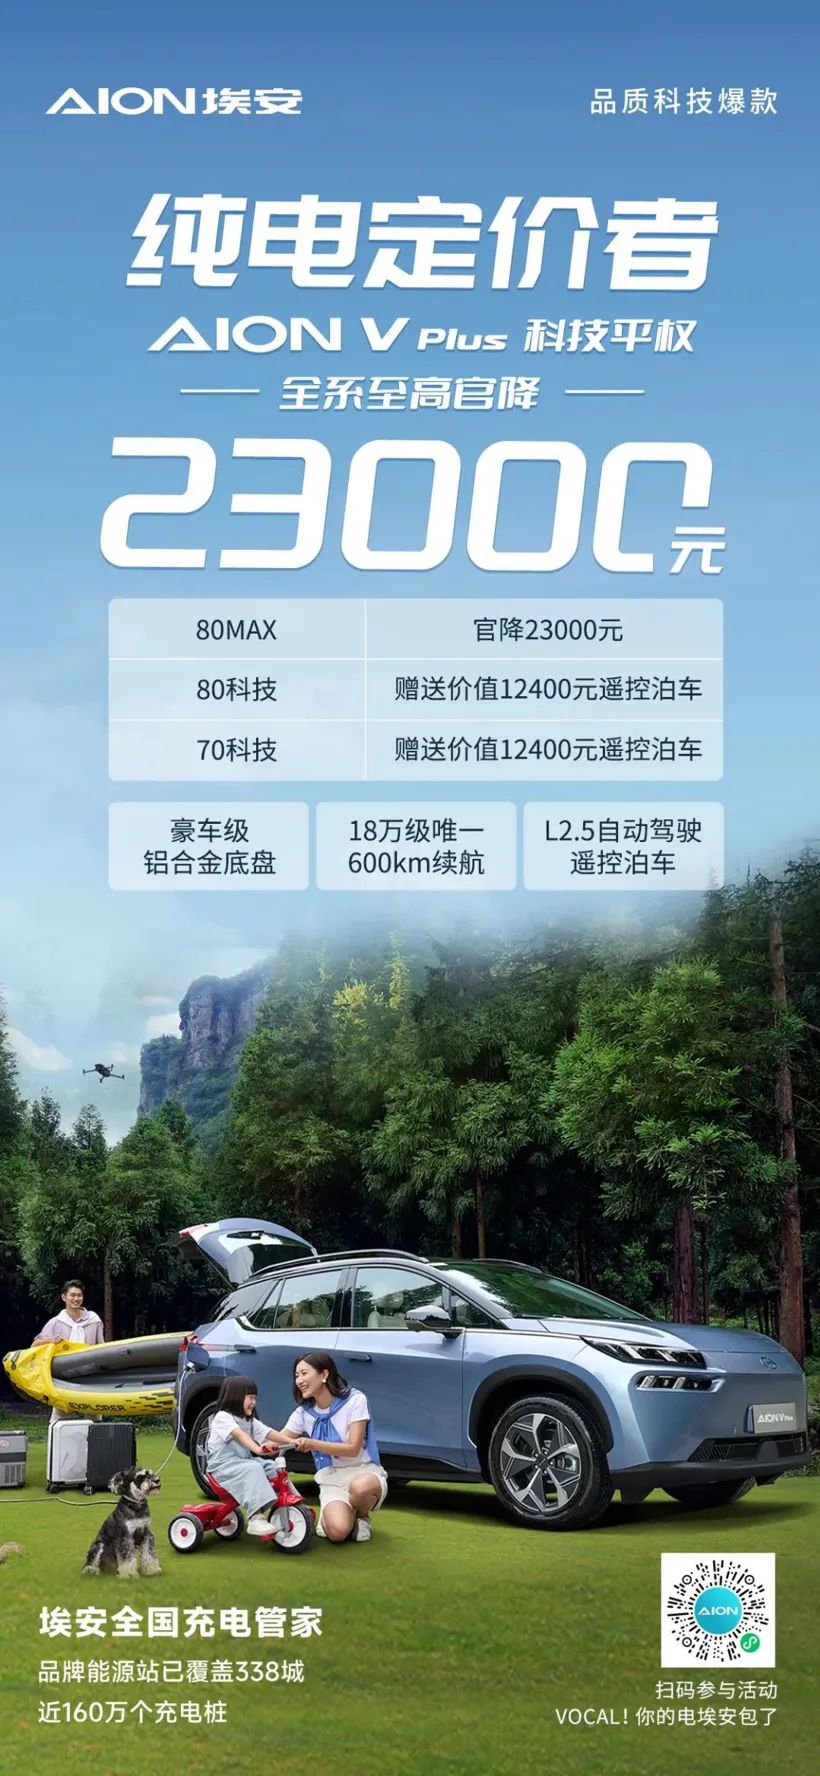 Alle GAC Aion V Plus-searjes wurde priis op RMB 23,000 foar de heechste offisjele priis